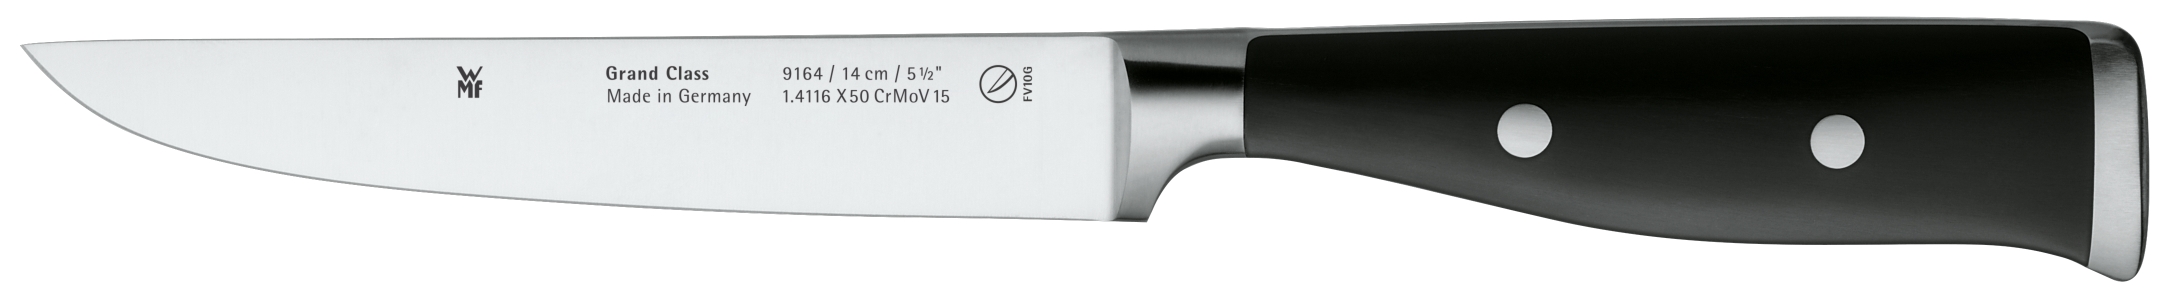 Универсальный нож Grand Class 14 см универсальный нож плошкин ложкин